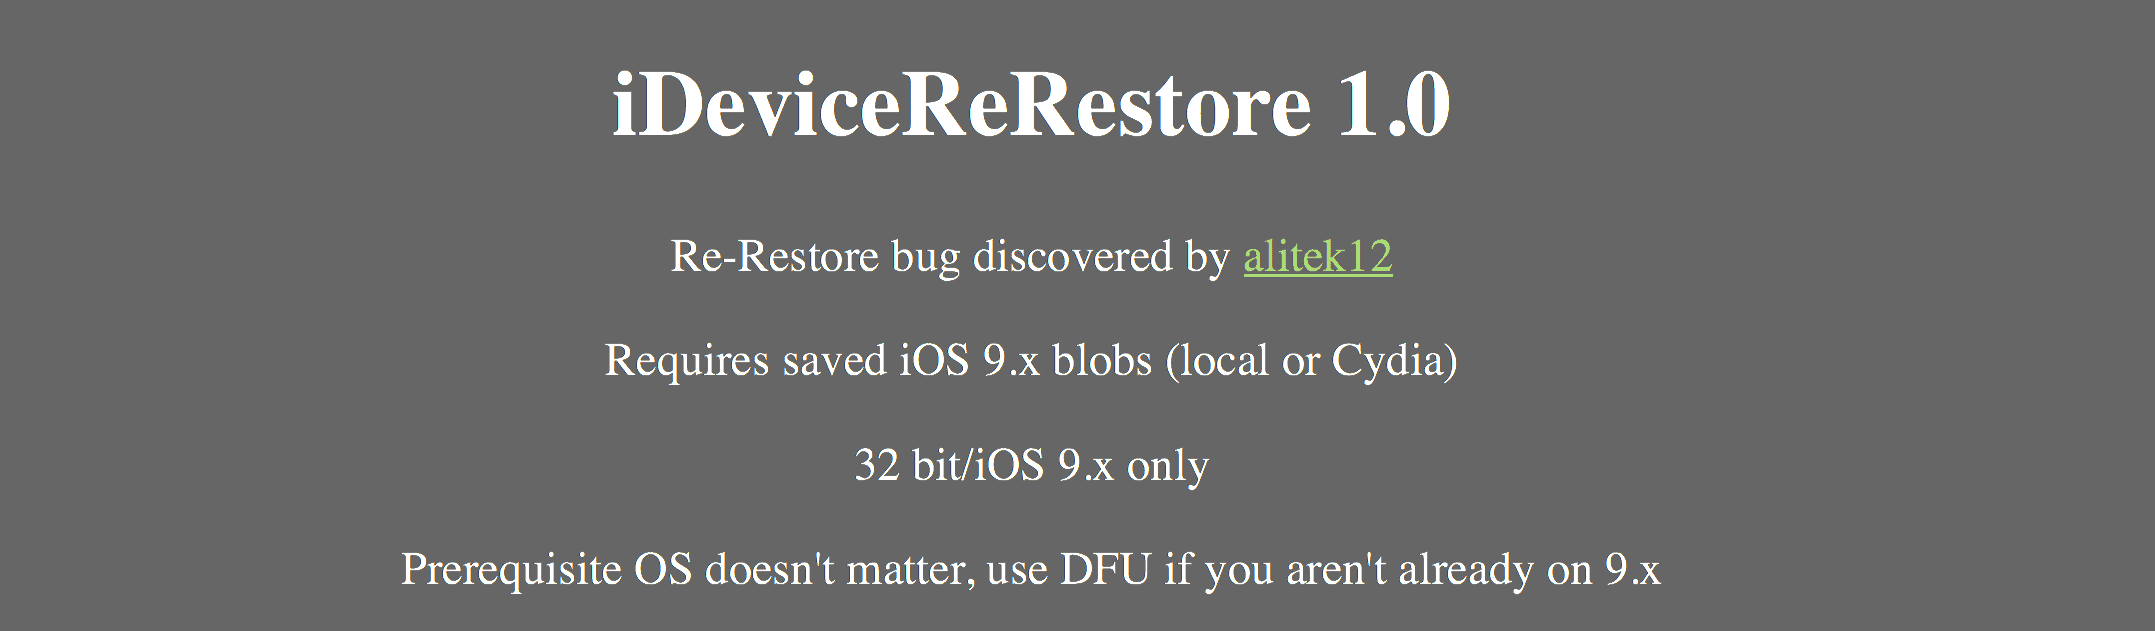 iDeviceReRestore 1.0.1 wydany - downgrade dla urządzeń z 32-bitowym SoC ciekawostki skąd pobrać iDeviceReRestore, skąd pobrać, iDeviceReRestore, download  Za każdym razem po pozbyciu się Jailbreak na rzecz nowszego oprogramowania po około miesiącu chciałem wrócić do poprzedniej wersji.
 Re restore tool header